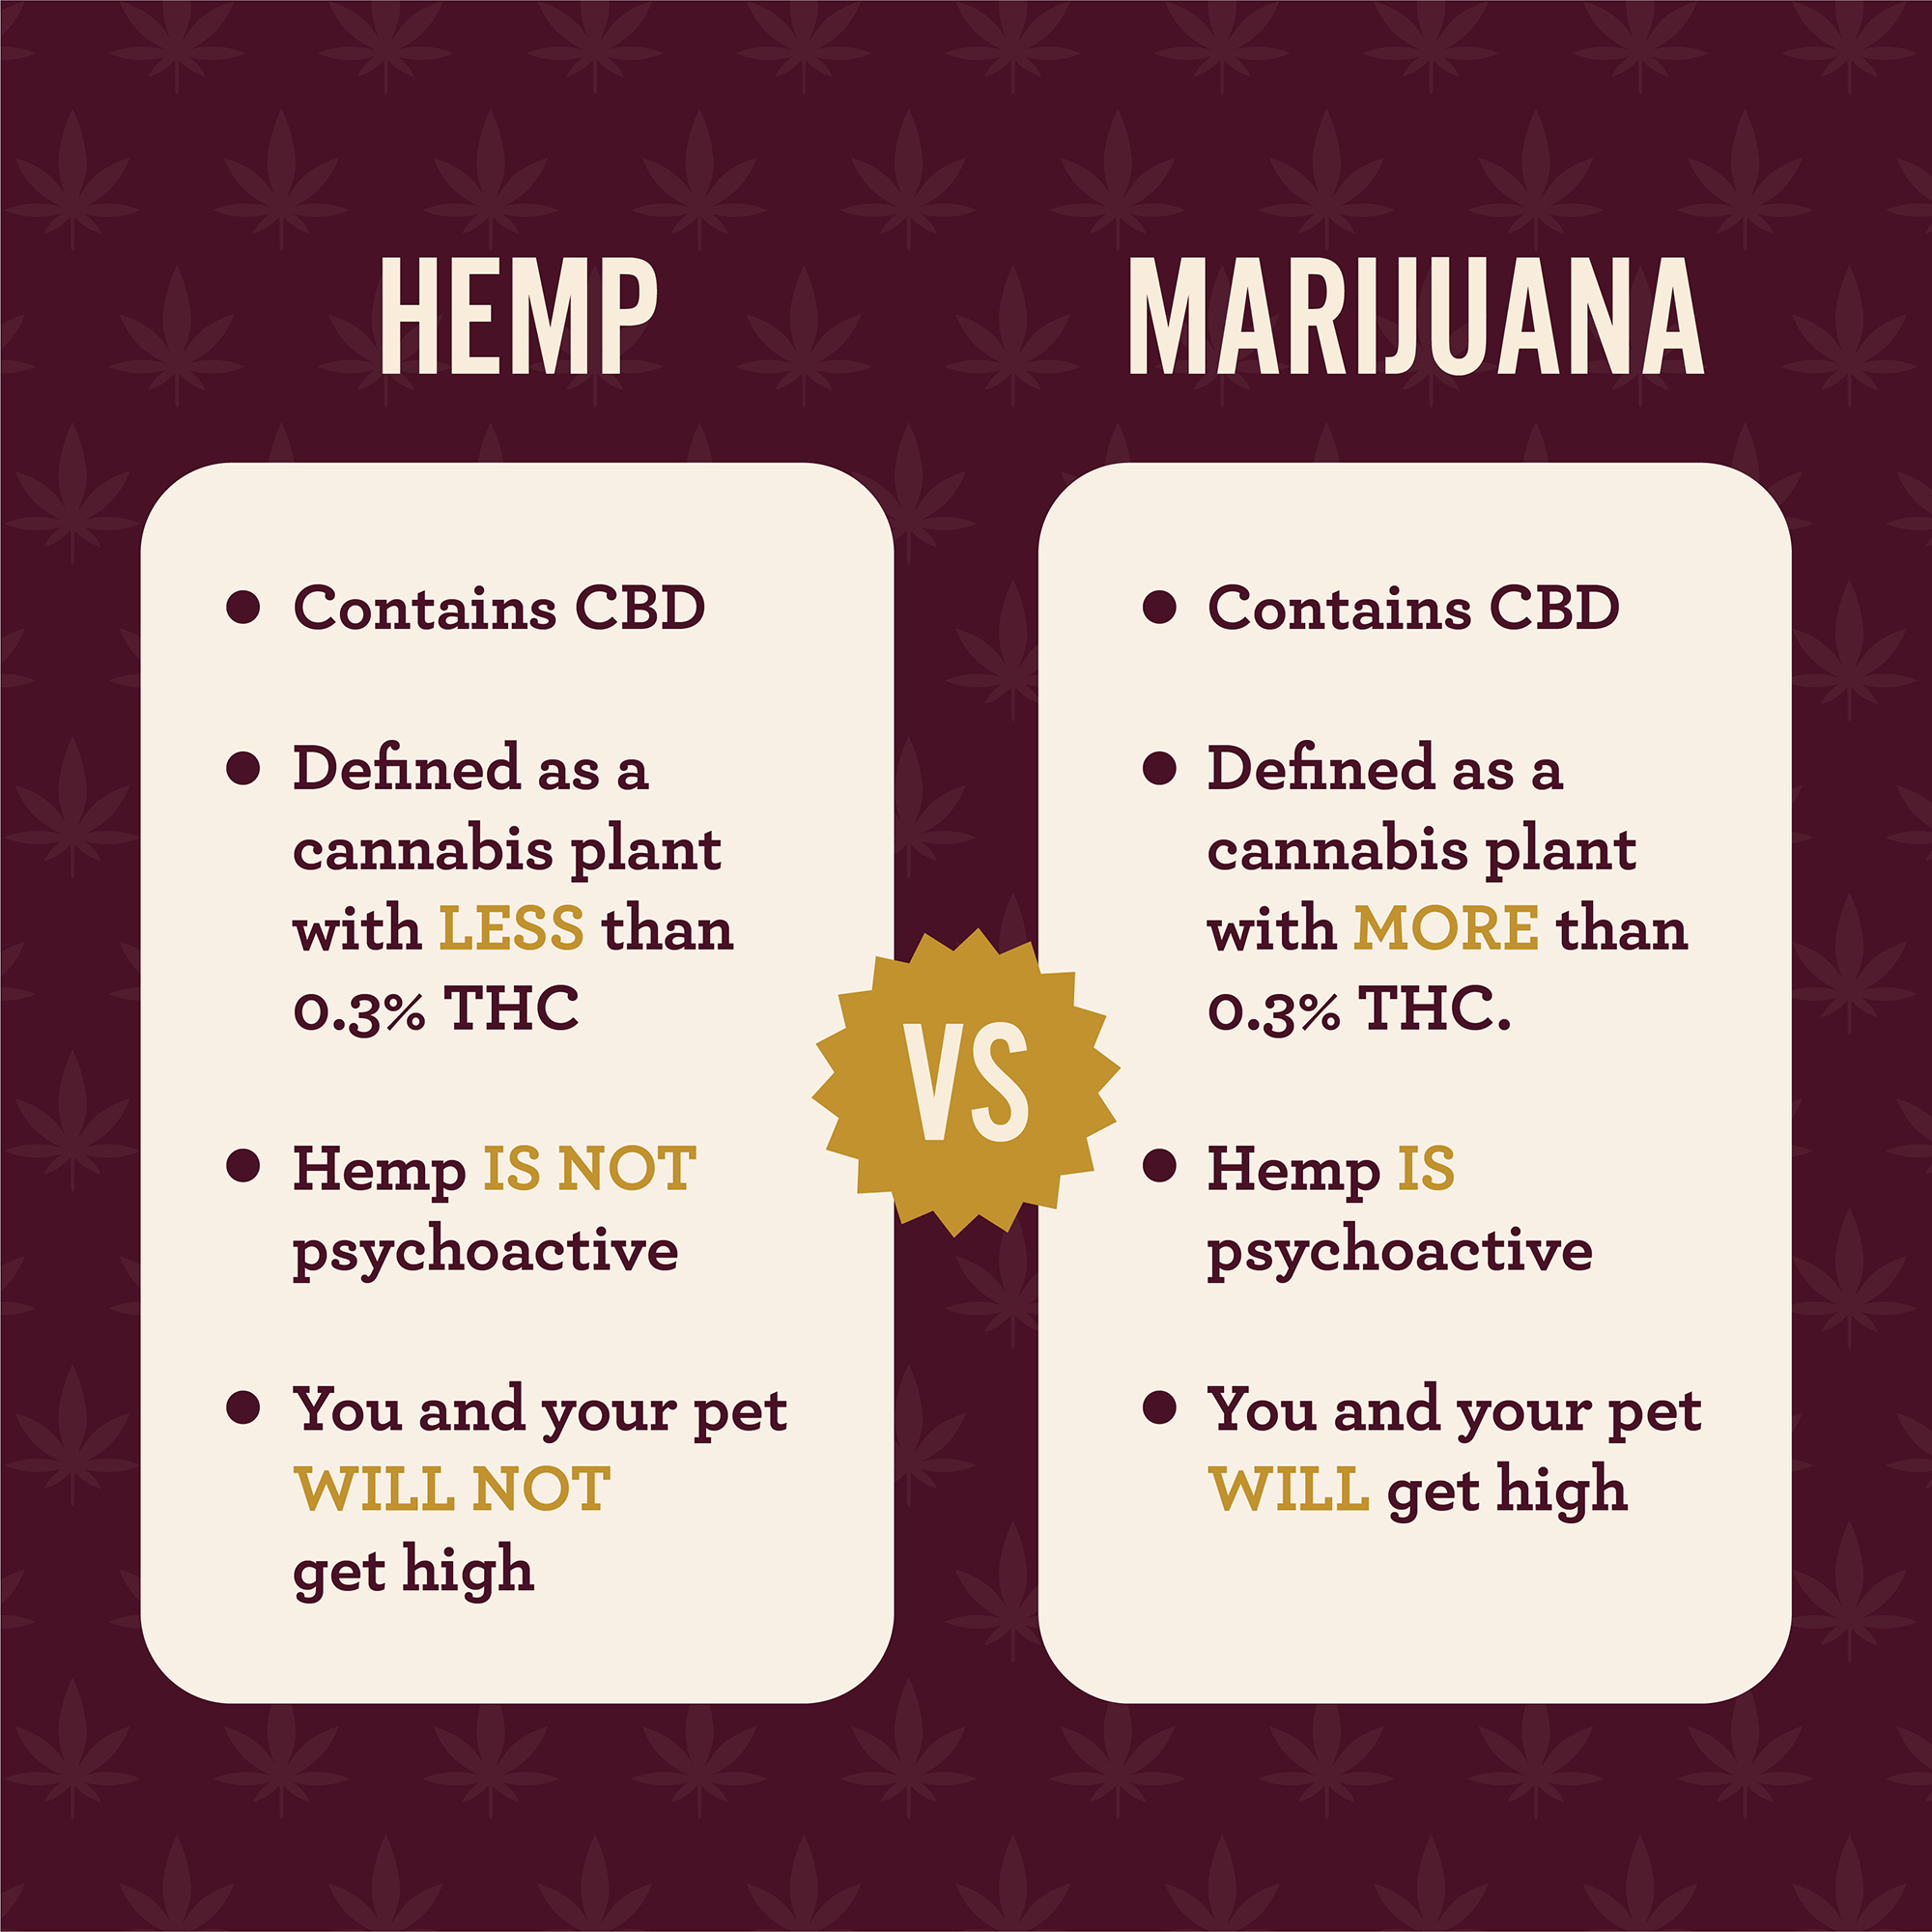 Hemp versus marijuana